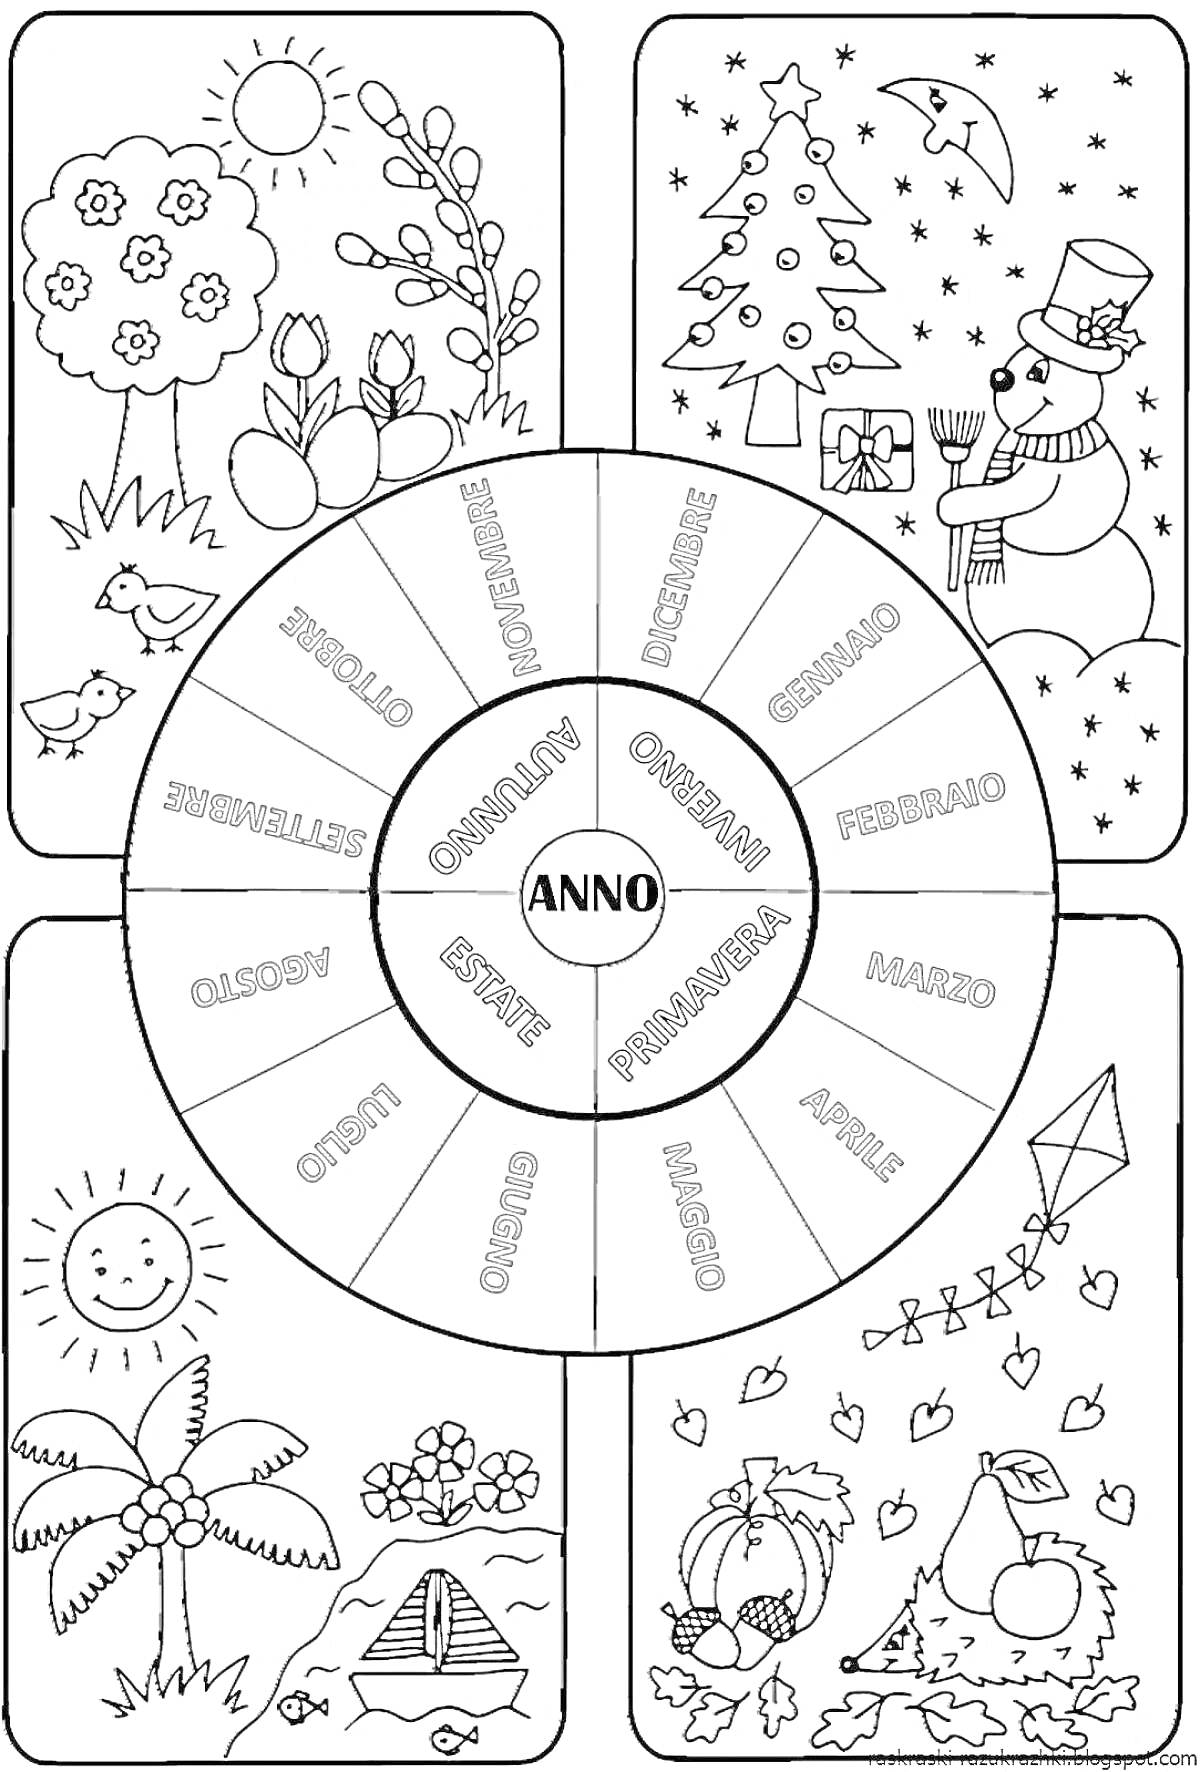 Раскраска - недельный круг для 1 класса с изображением весны с деревьями и цветами, зимы со снеговиком и ёлкой, лета с солнышком, пальмами и палаткой, осени с фруктами, листьями и воздушным змеем